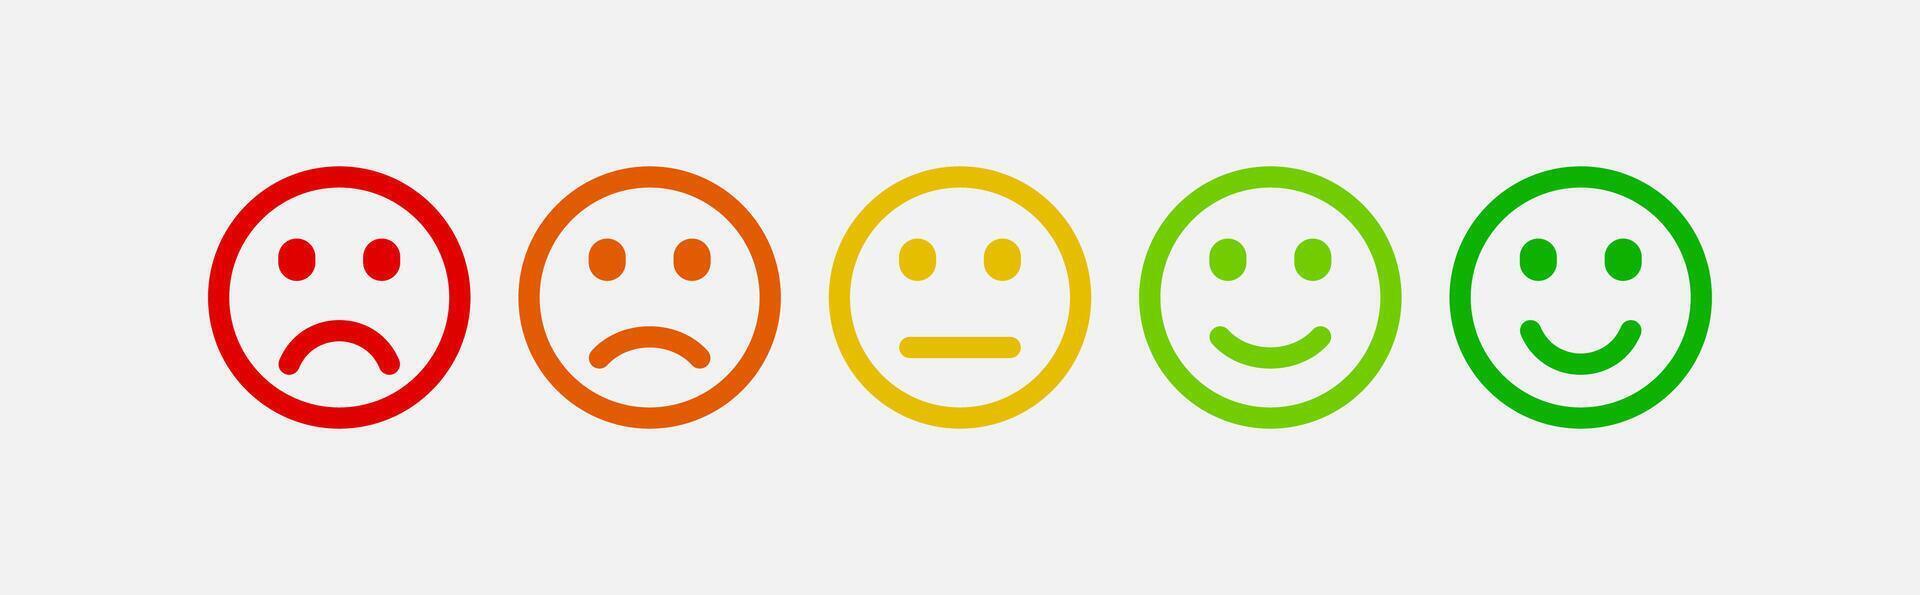 emocional estado animico escala emojis cliente satisfacción indicador emoticones aislado vector. vector